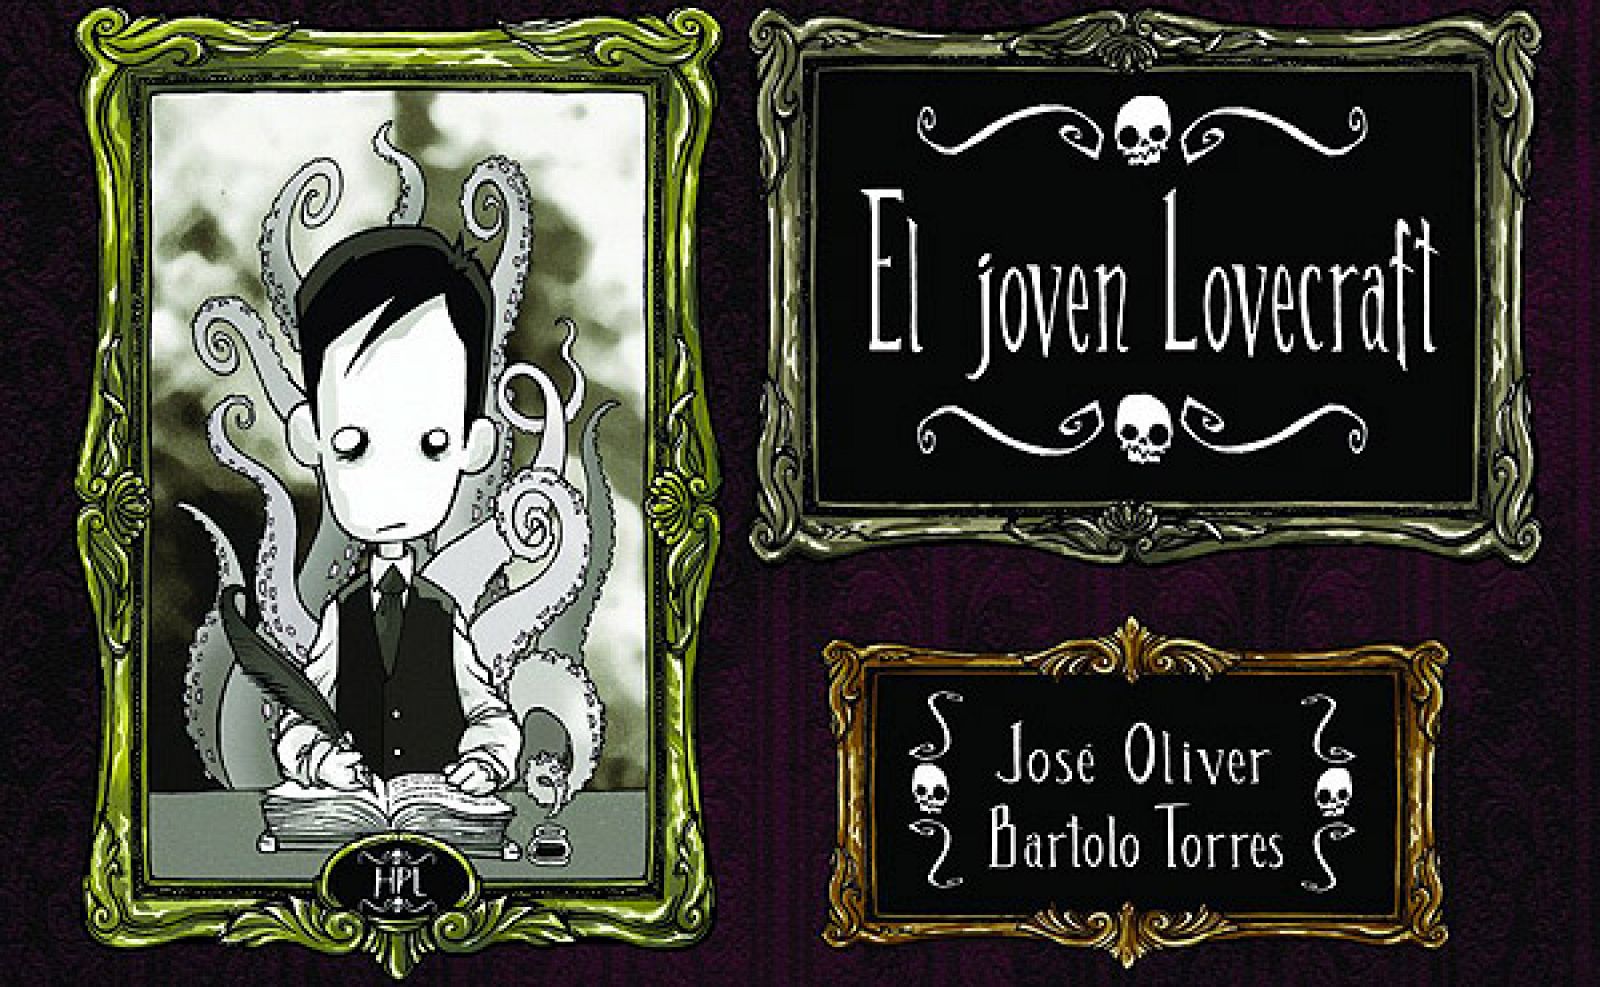 Portada del cómic que recoge las tiras de El joven Lovecraft, obra del guionista mallorquín José Oliver y el dibujante ibicenco Bartolo Torres